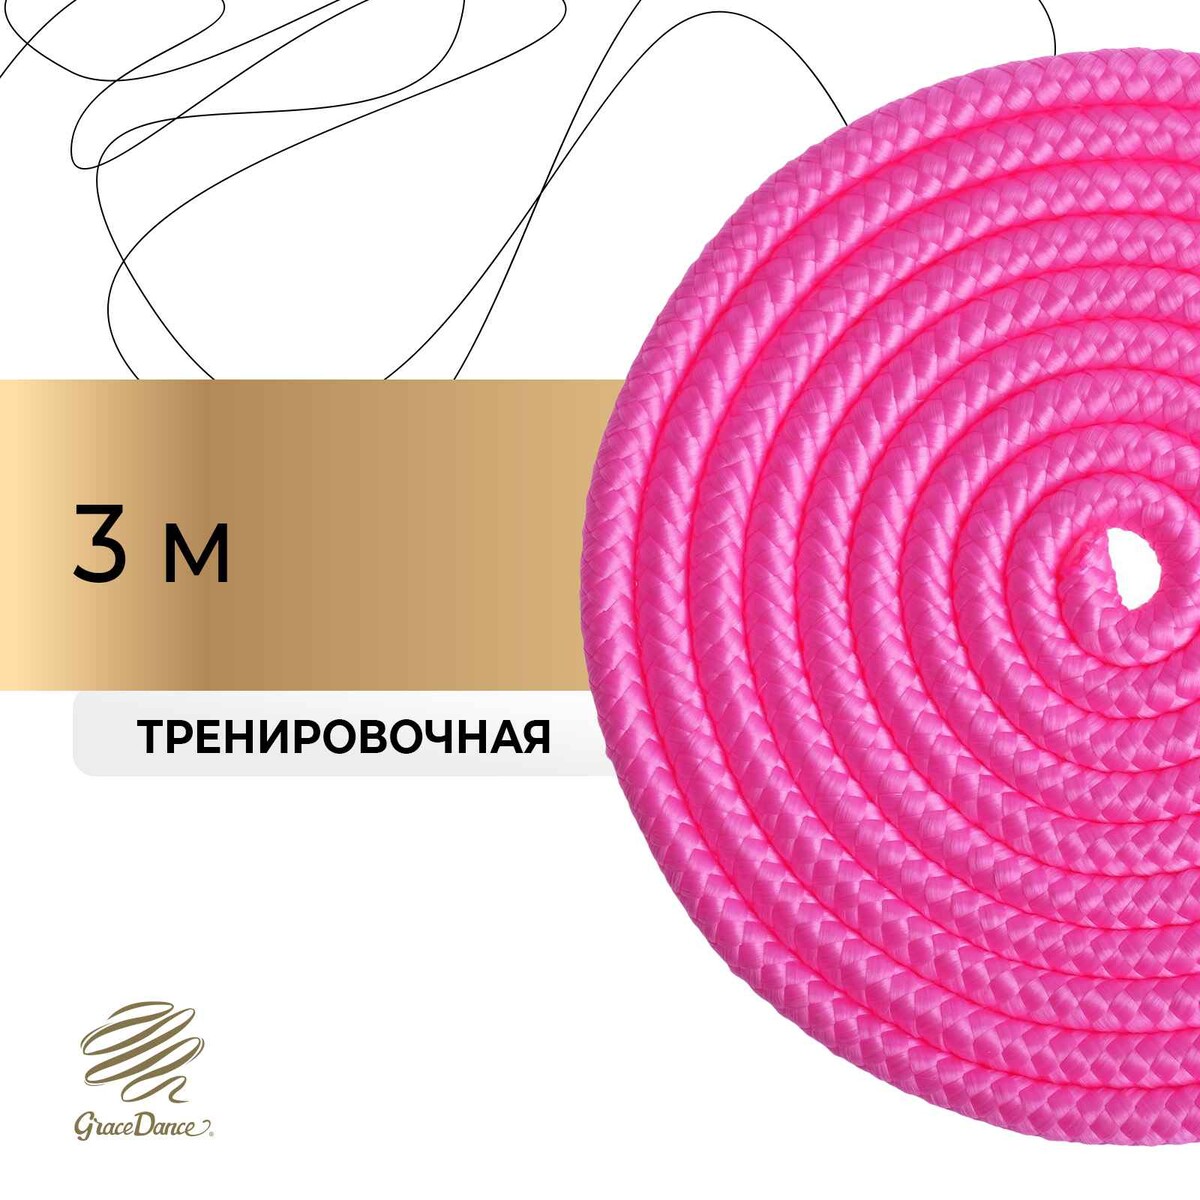 Скакалка для художественной гимнастики grace dance, 3 м, цвет розовый скакалка гимнастическая утяжелённая grace dance с люрексом 3 м 180 г сиреневый серебристый